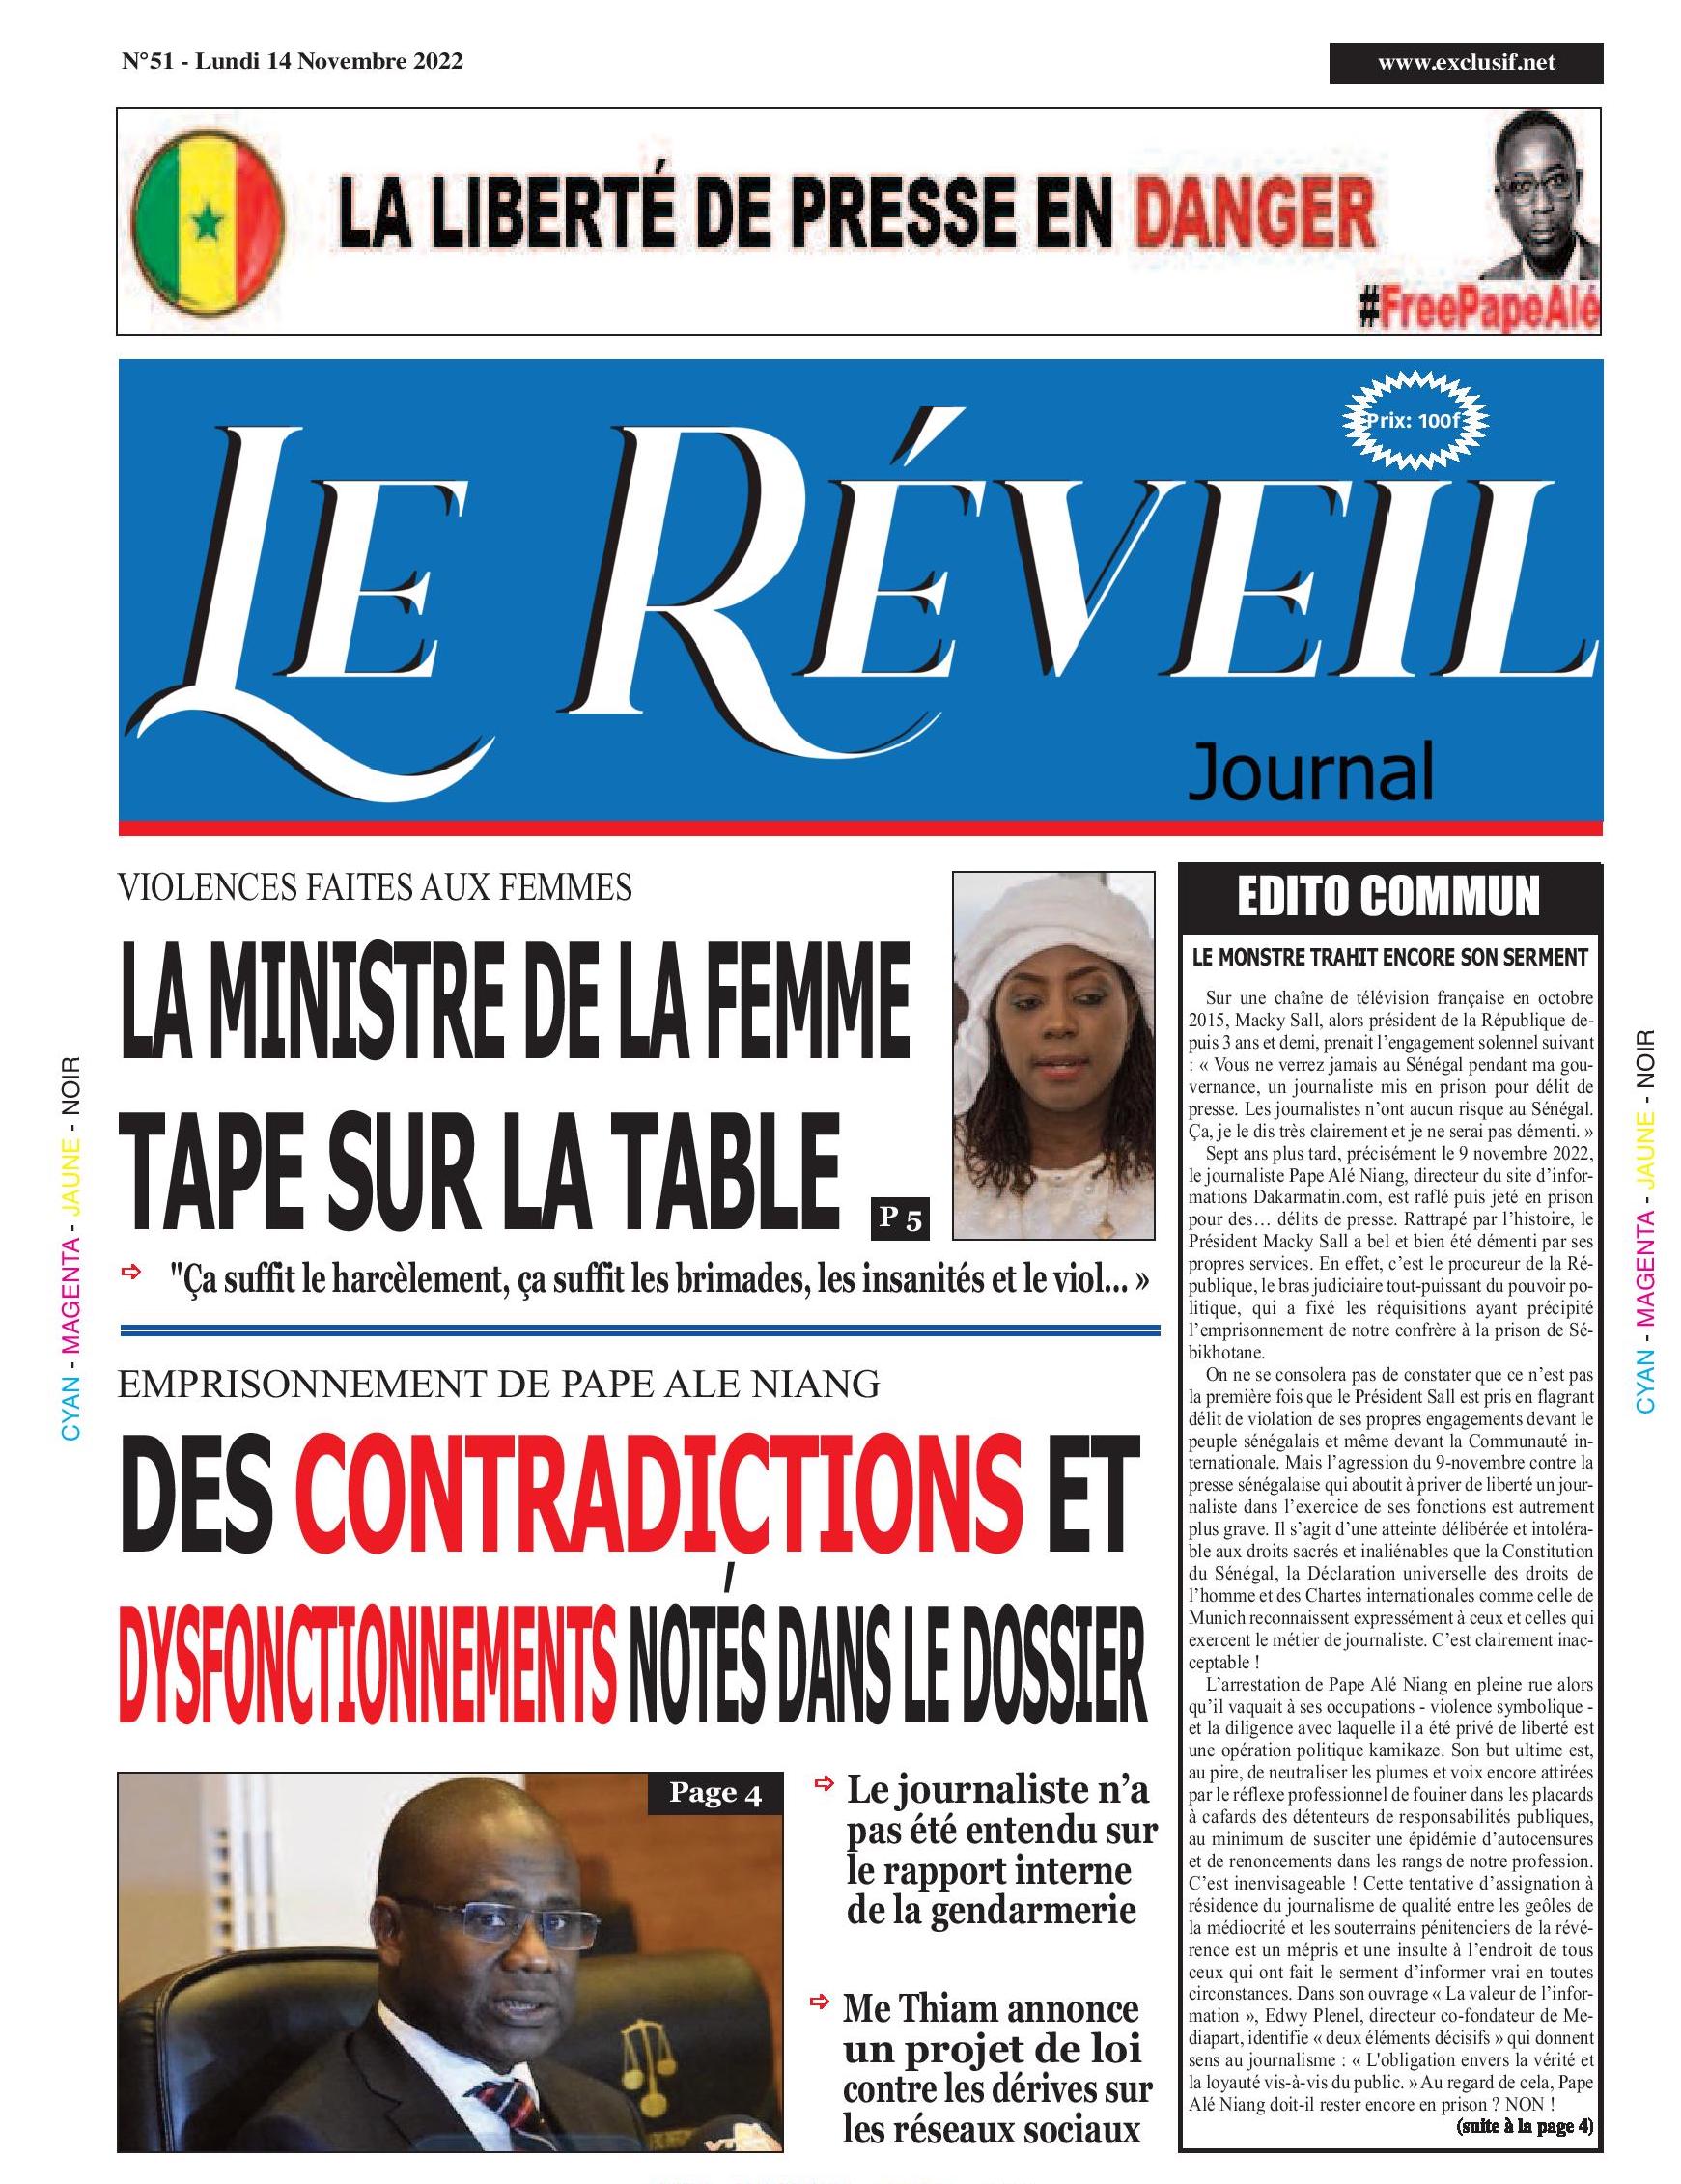 Le Quotidien "Le Réveil" du Lundi 14 Novembre 2022